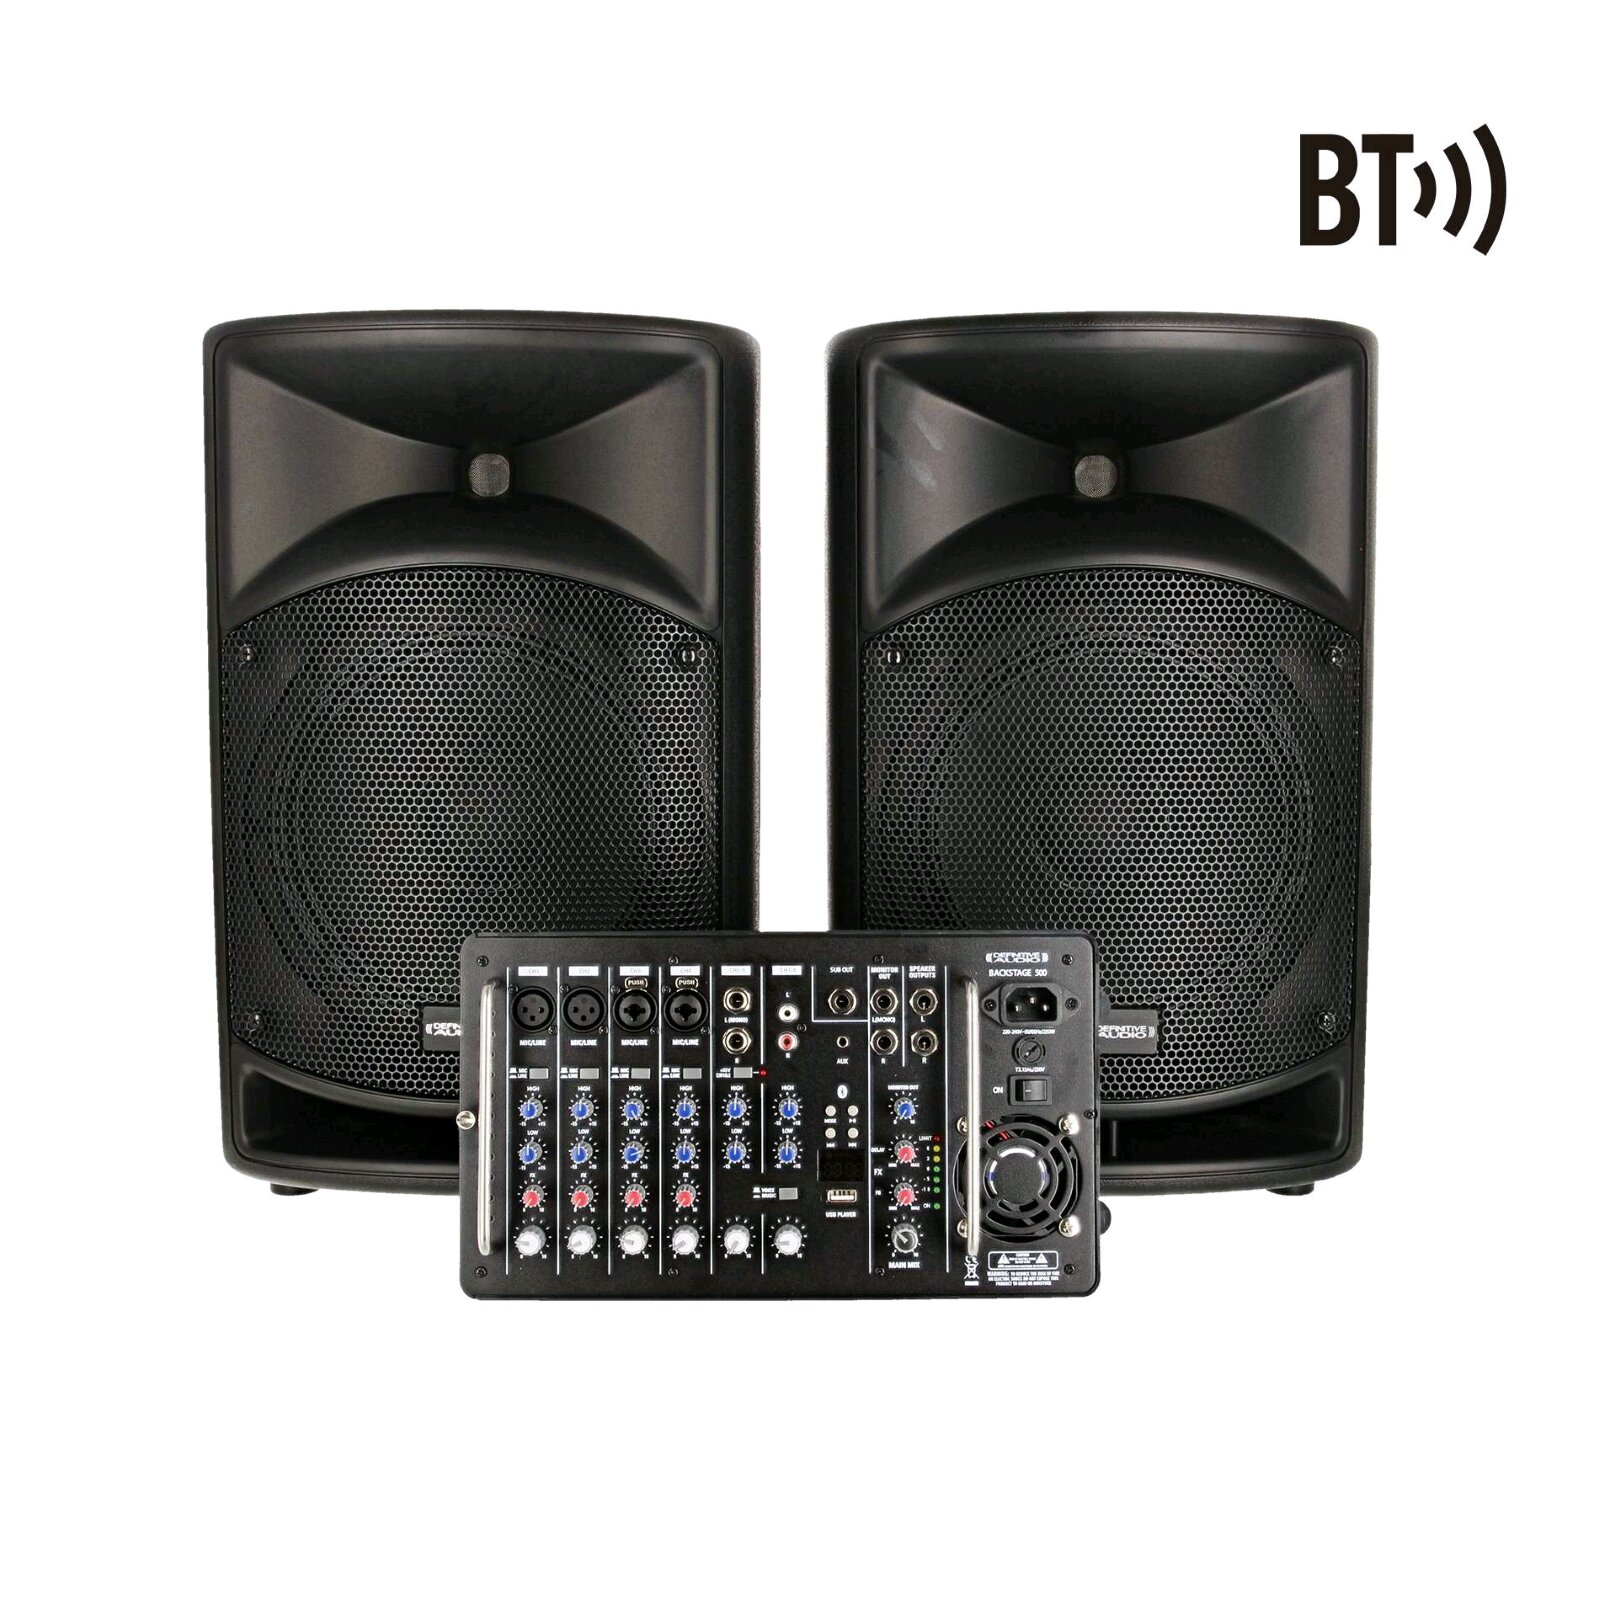 Definitive Audio BACKSTAGE 500 Système amplifié avec mixer 500W RMS : miniature 1